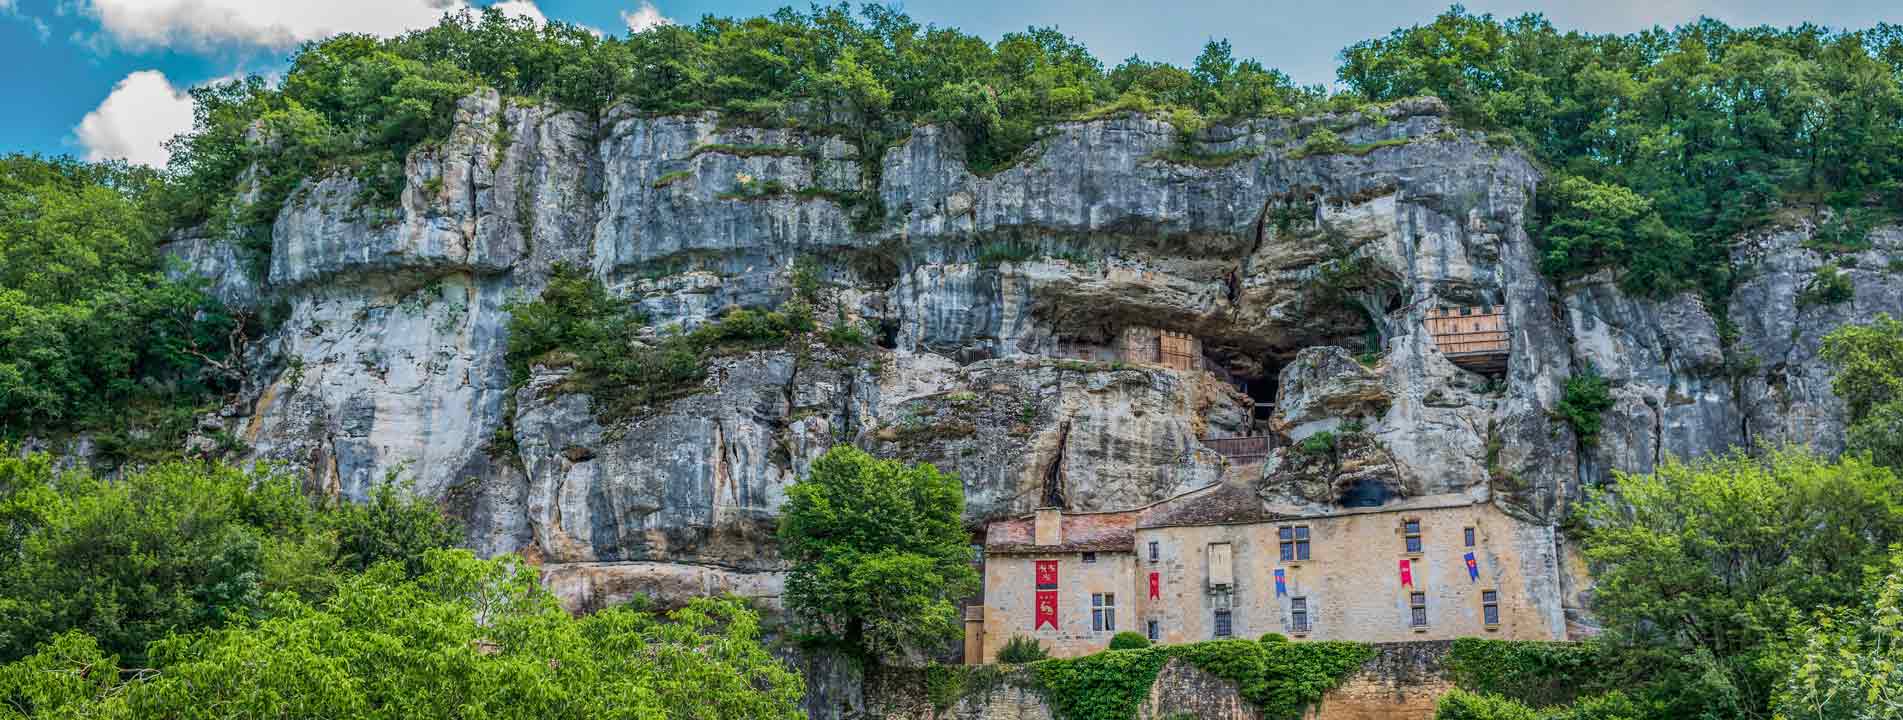 maison-forte-reignac-monument-historique-dans-la-falaise-proche-camping-les-pialades